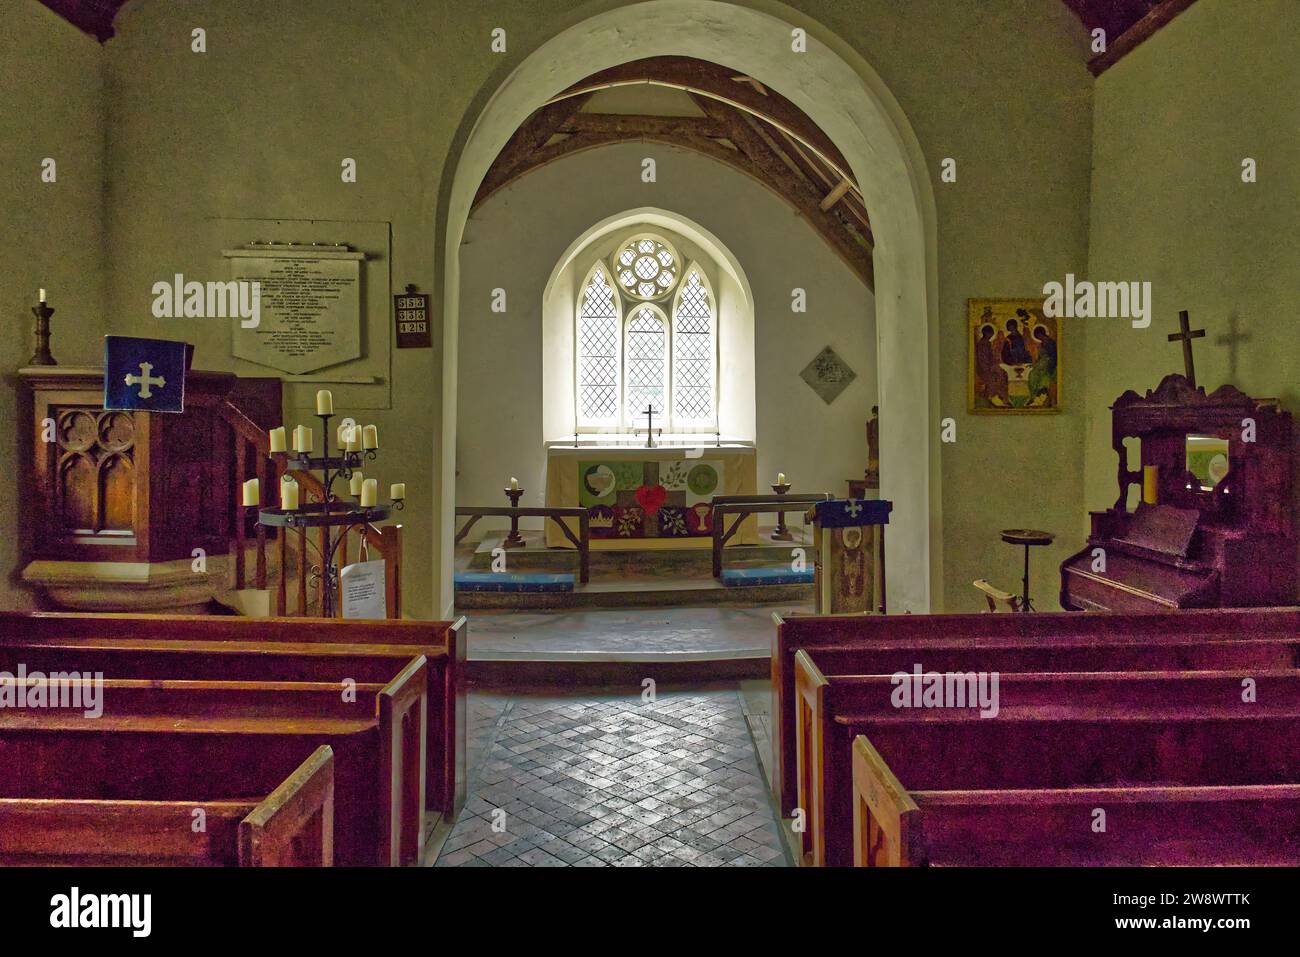 Intérieur de St Davids Old Church, Llanwrtyd Wells, Powys, pays de Galles, Royaume-Uni - choeur, autel et nef Banque D'Images